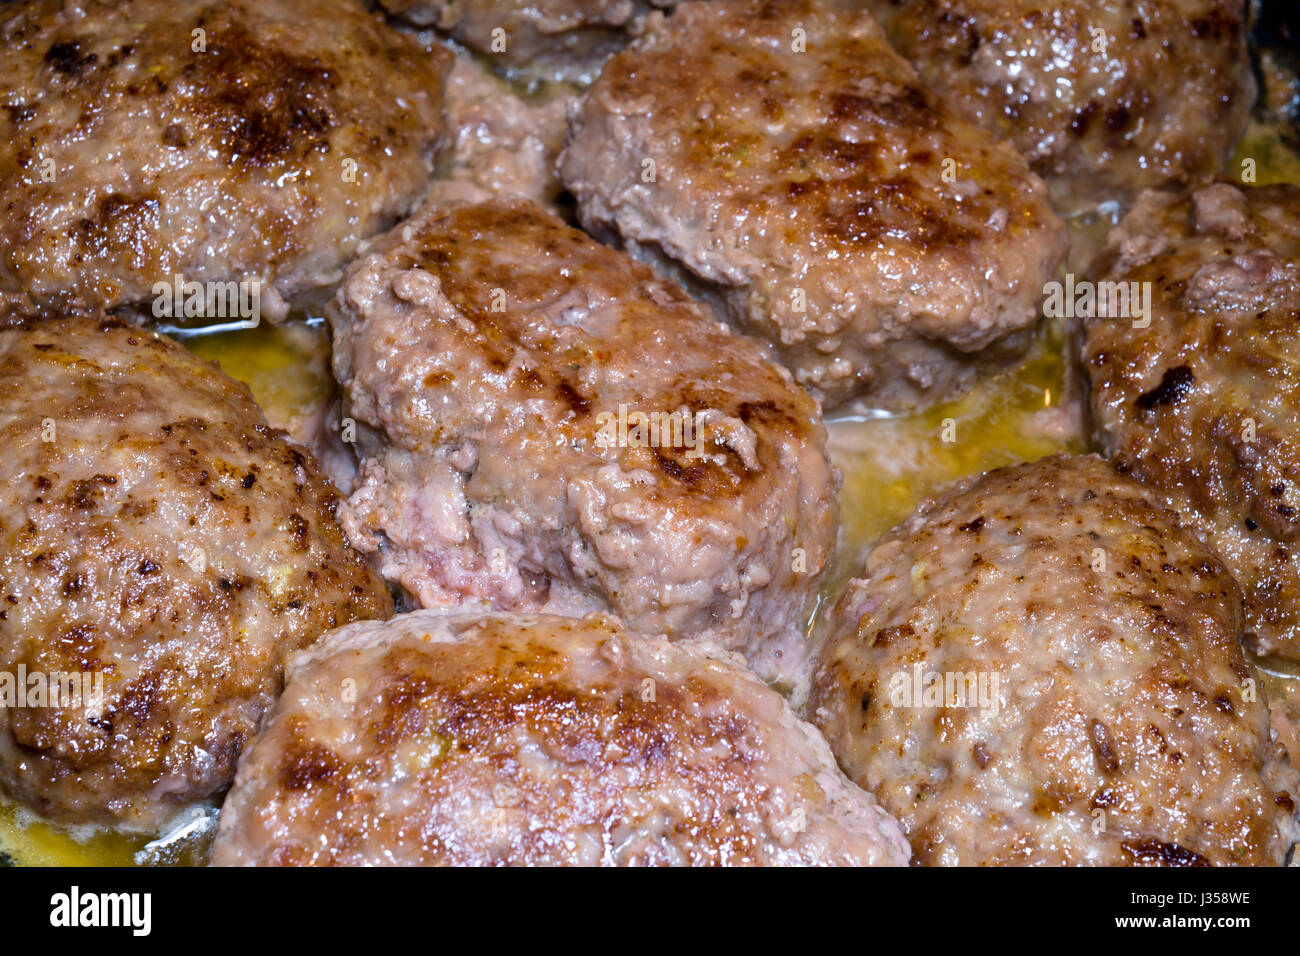 Escalope de viande délicieux populaires de viande de boeuf aux épices, cuit sur la cuisine ukrainienne d'ordonnance, frits dans l'huile jusqu'à cuisson complète. Il est très nourrissant Banque D'Images